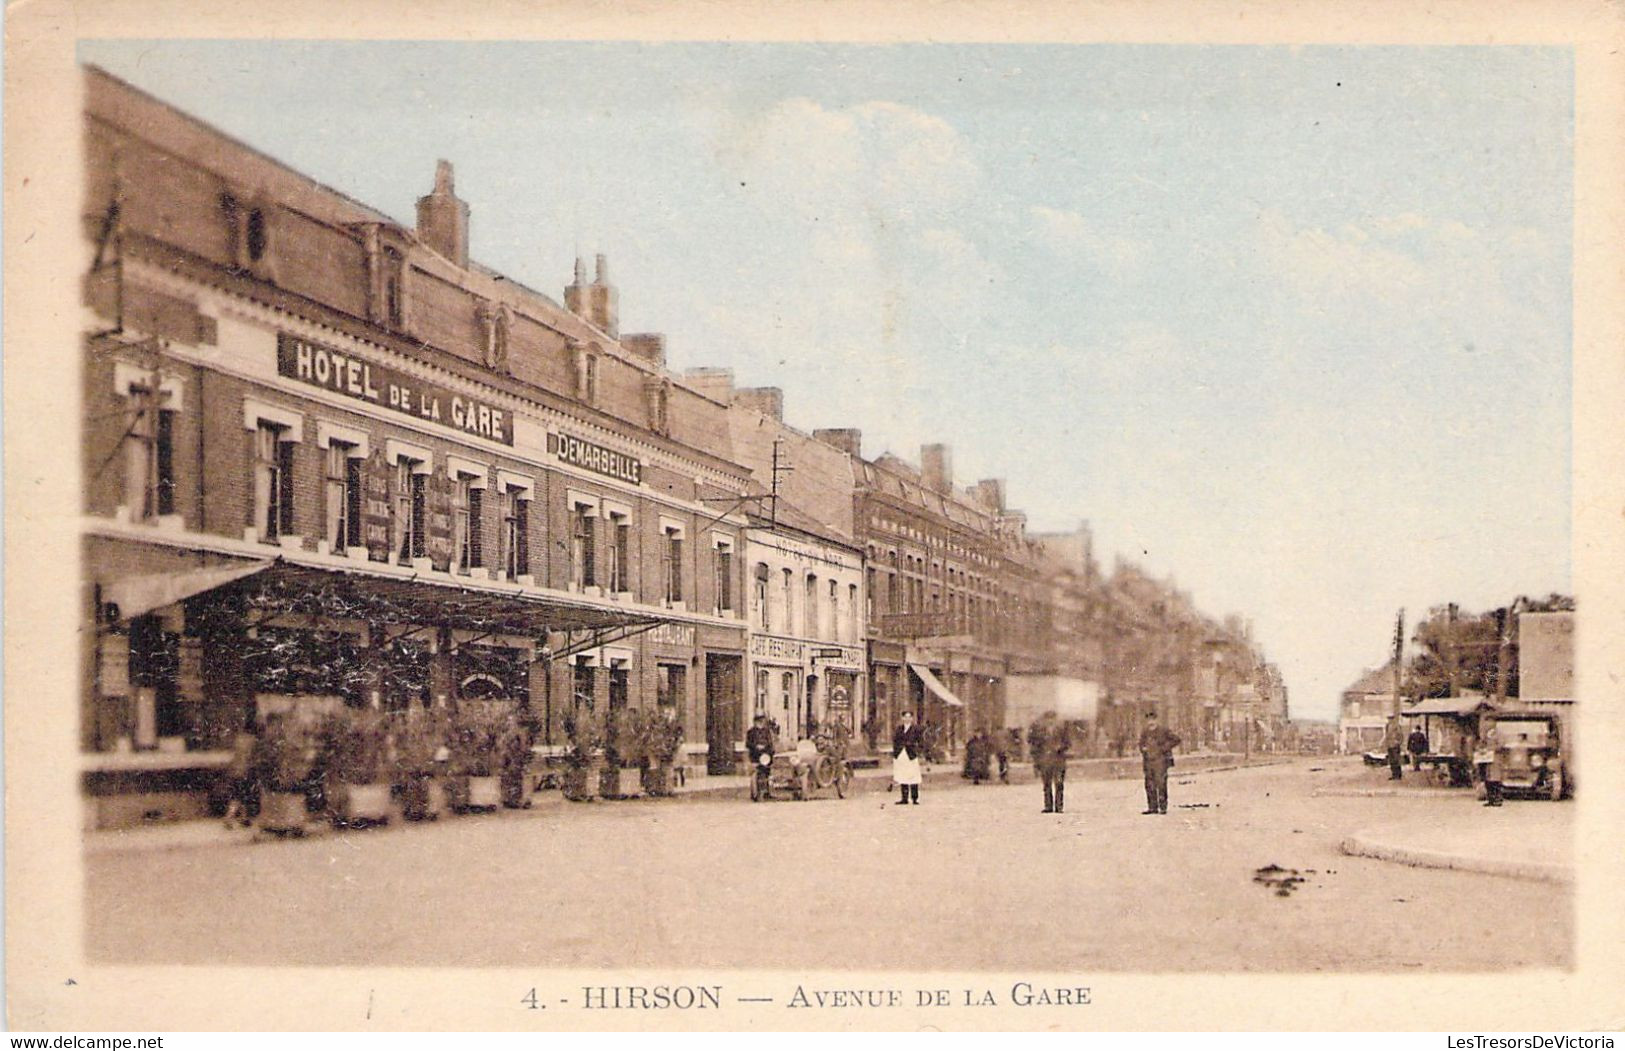 FRANCE - 02 - HIRSON - Avenue De La Gare - Voiture - Hôtel De La Gare - Ciel Bleu - Letellier - Carte Postale Ancienne - Hirson